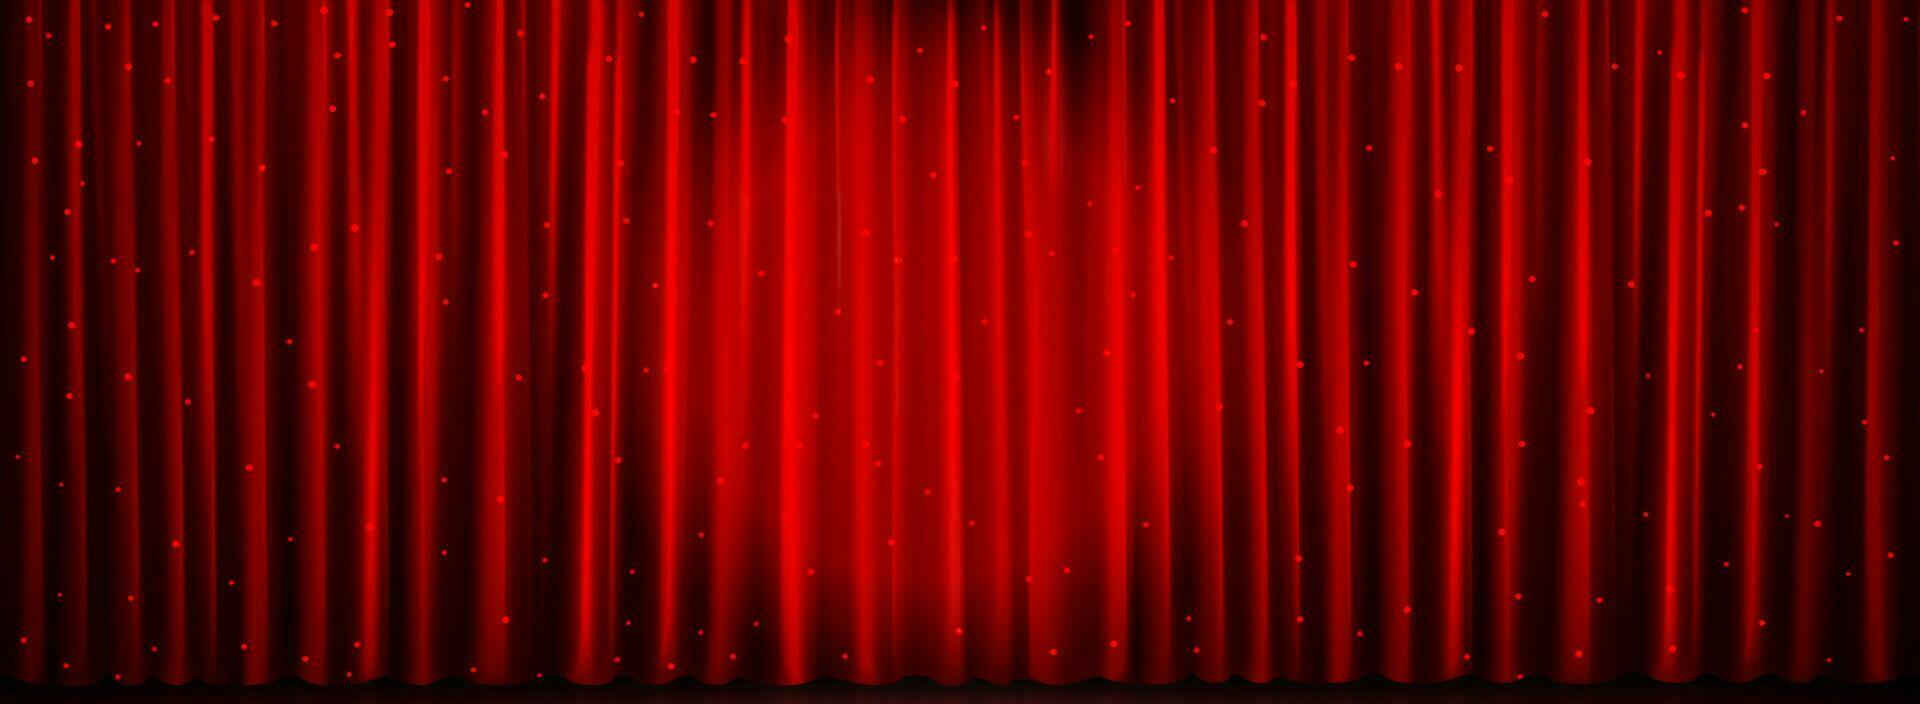 vermelho teatro cortina fundo, mostrar luz vetor